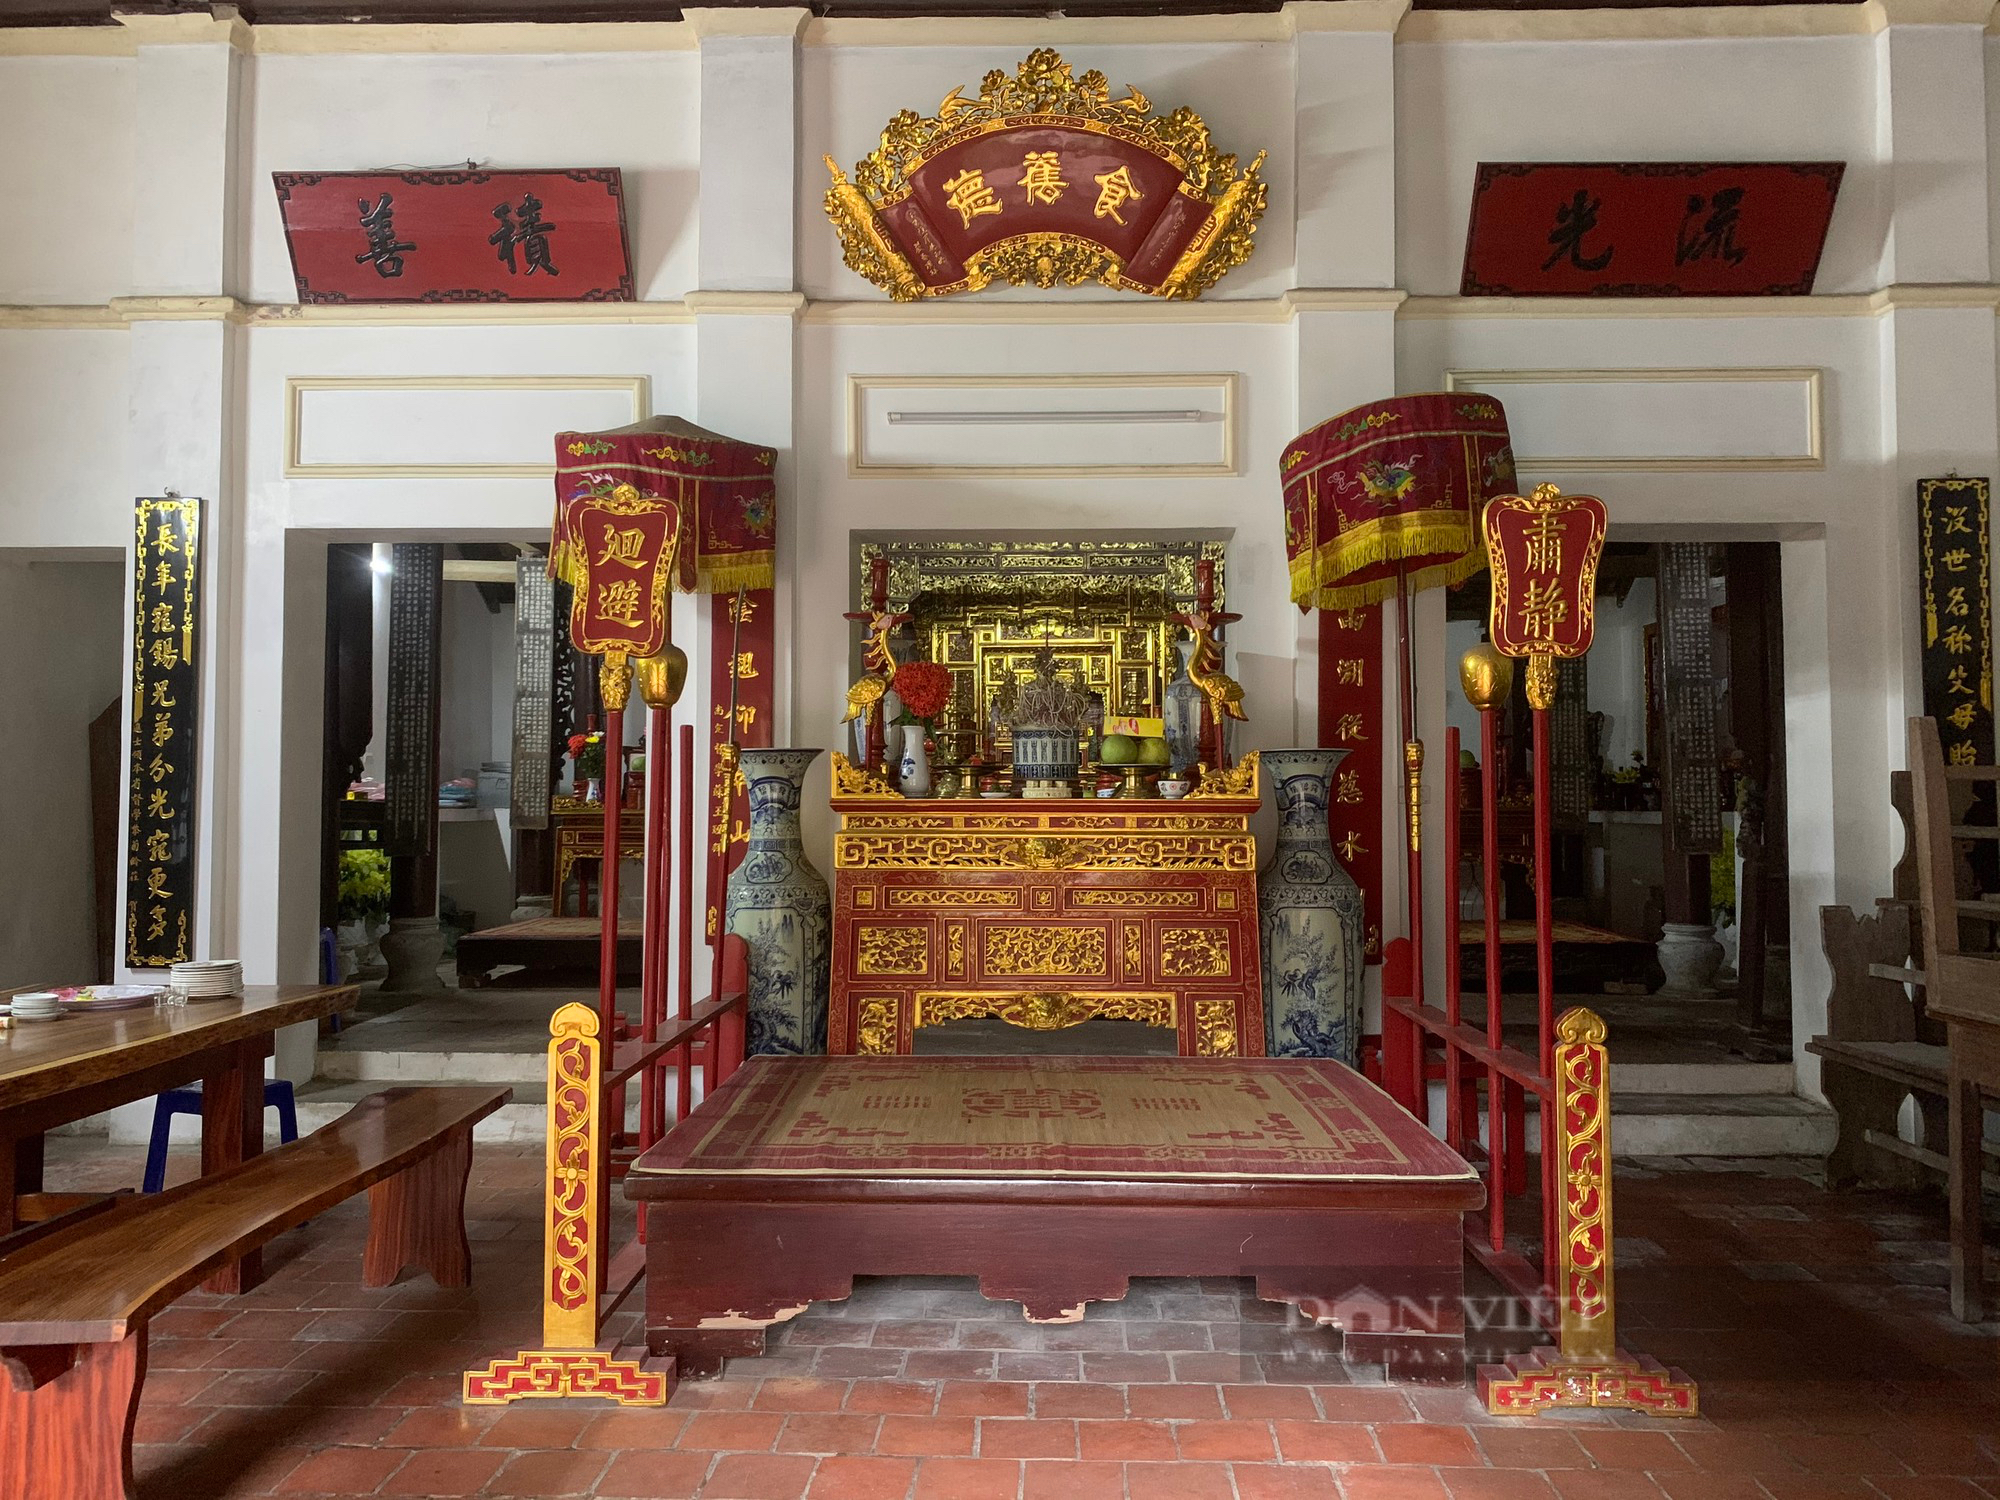 Chiêm ngưỡng nhà cổ 200 năm tuổi xuất hiện trong hàng loạt bộ phim truyền hình Việt Nam - Ảnh 6.